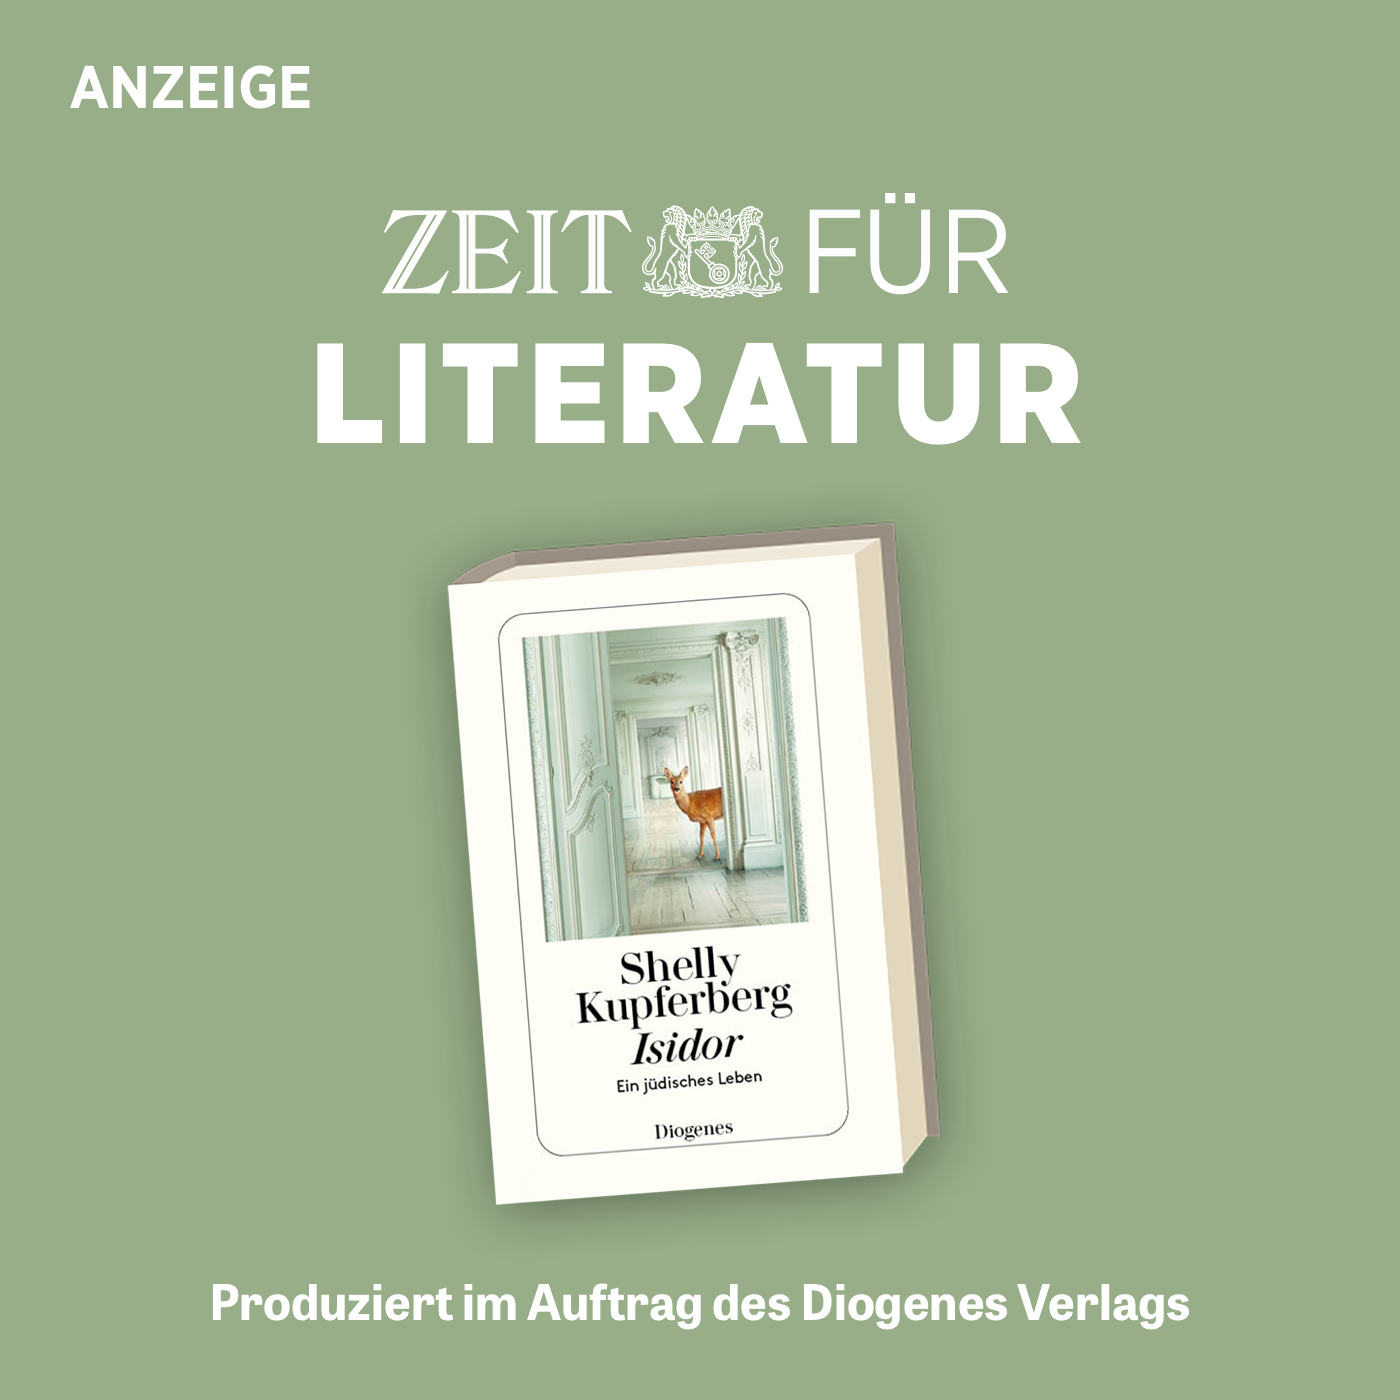 ZEIT für Literatur mit Shelly Kupferberg